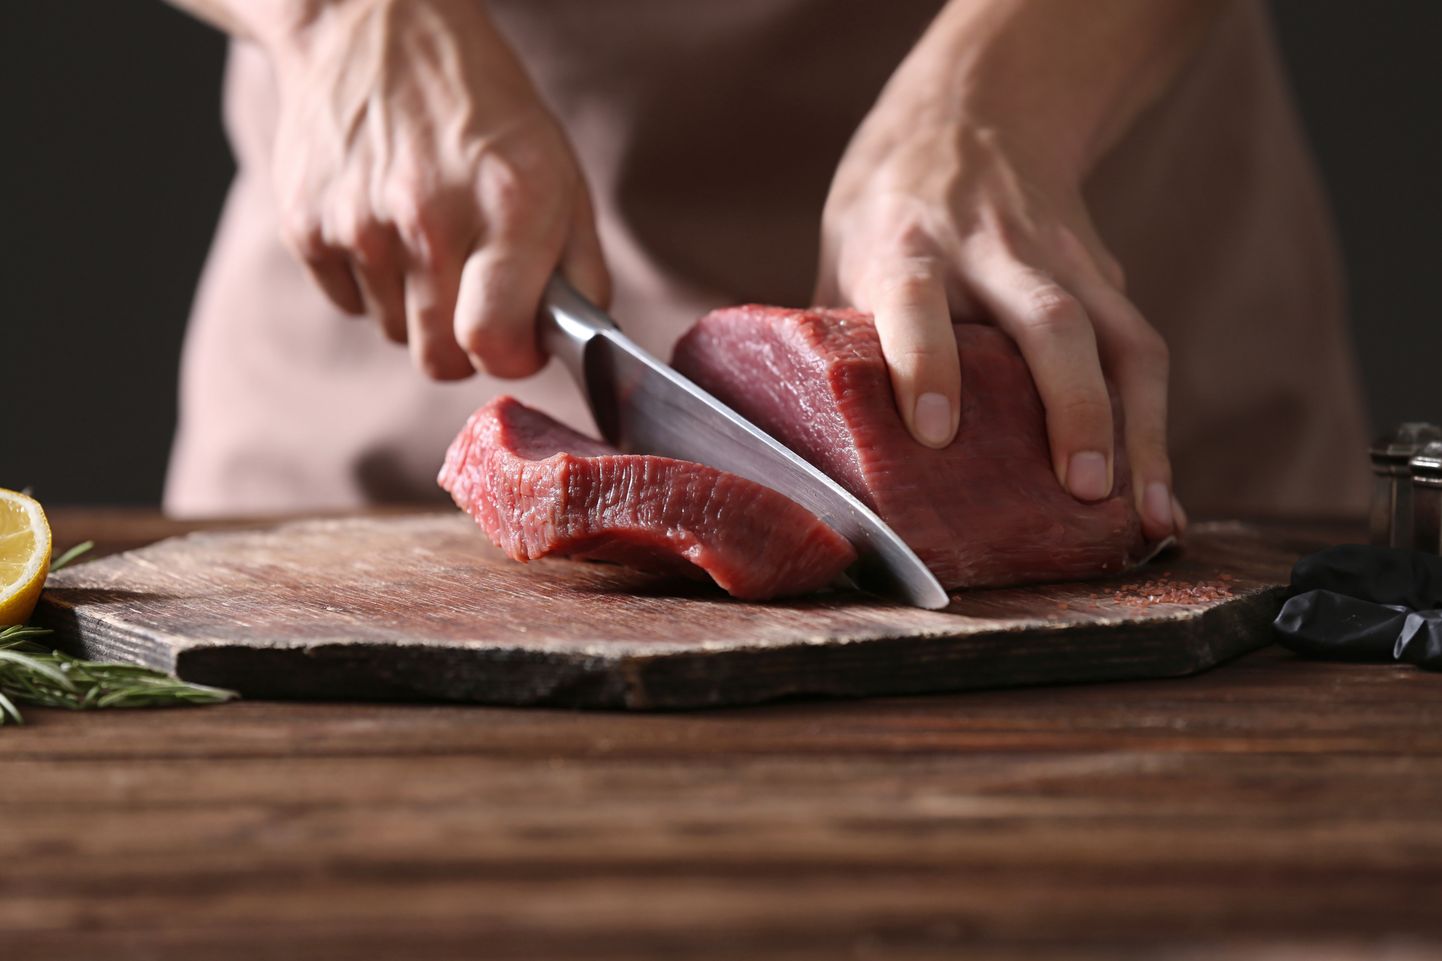 Euroopa Komisjoni muudatusega võimaldatakse toidu annetamise eesmärgil liha külmutada ka jaemüügiettevõttes.